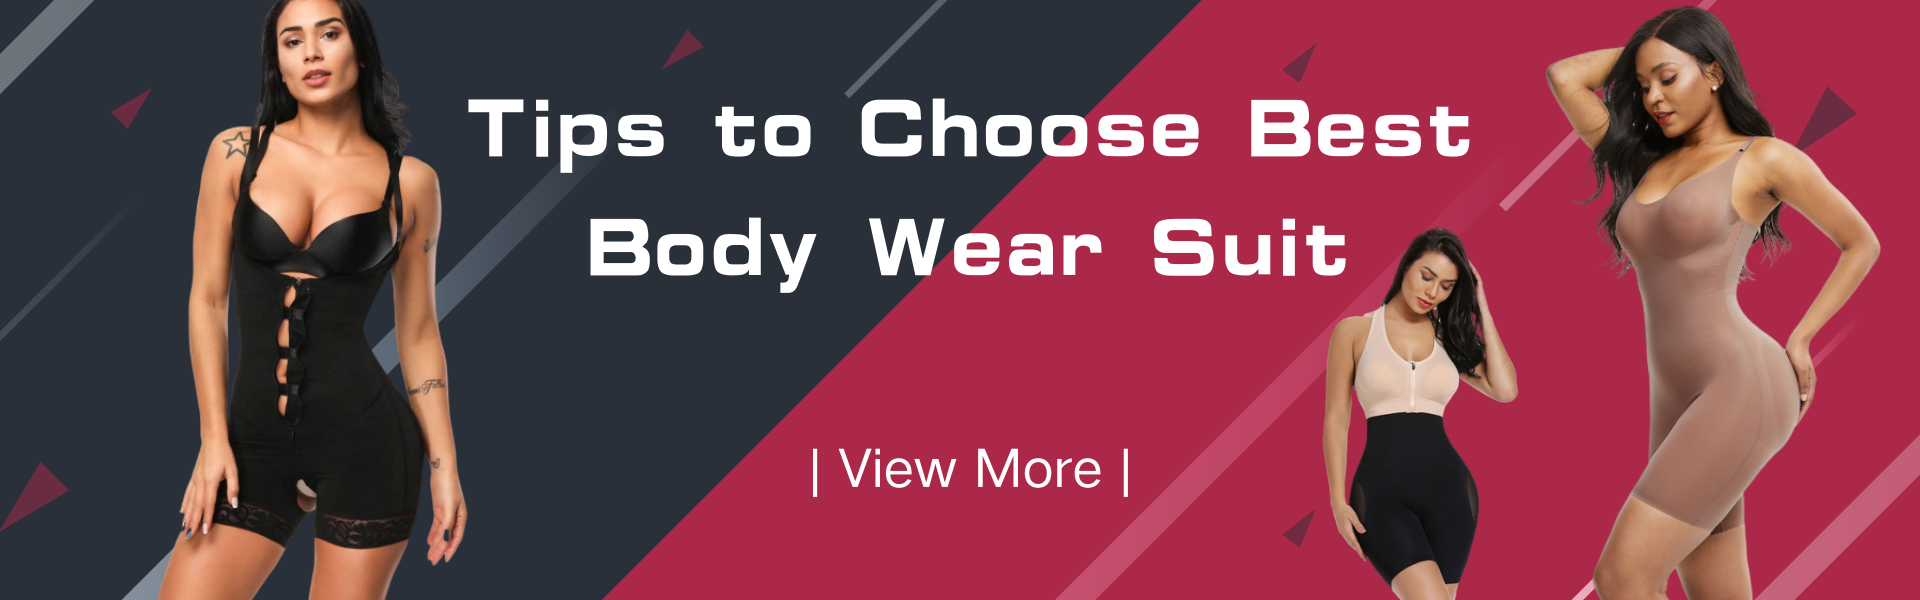 Tips to Choose Best Body Wear Suit